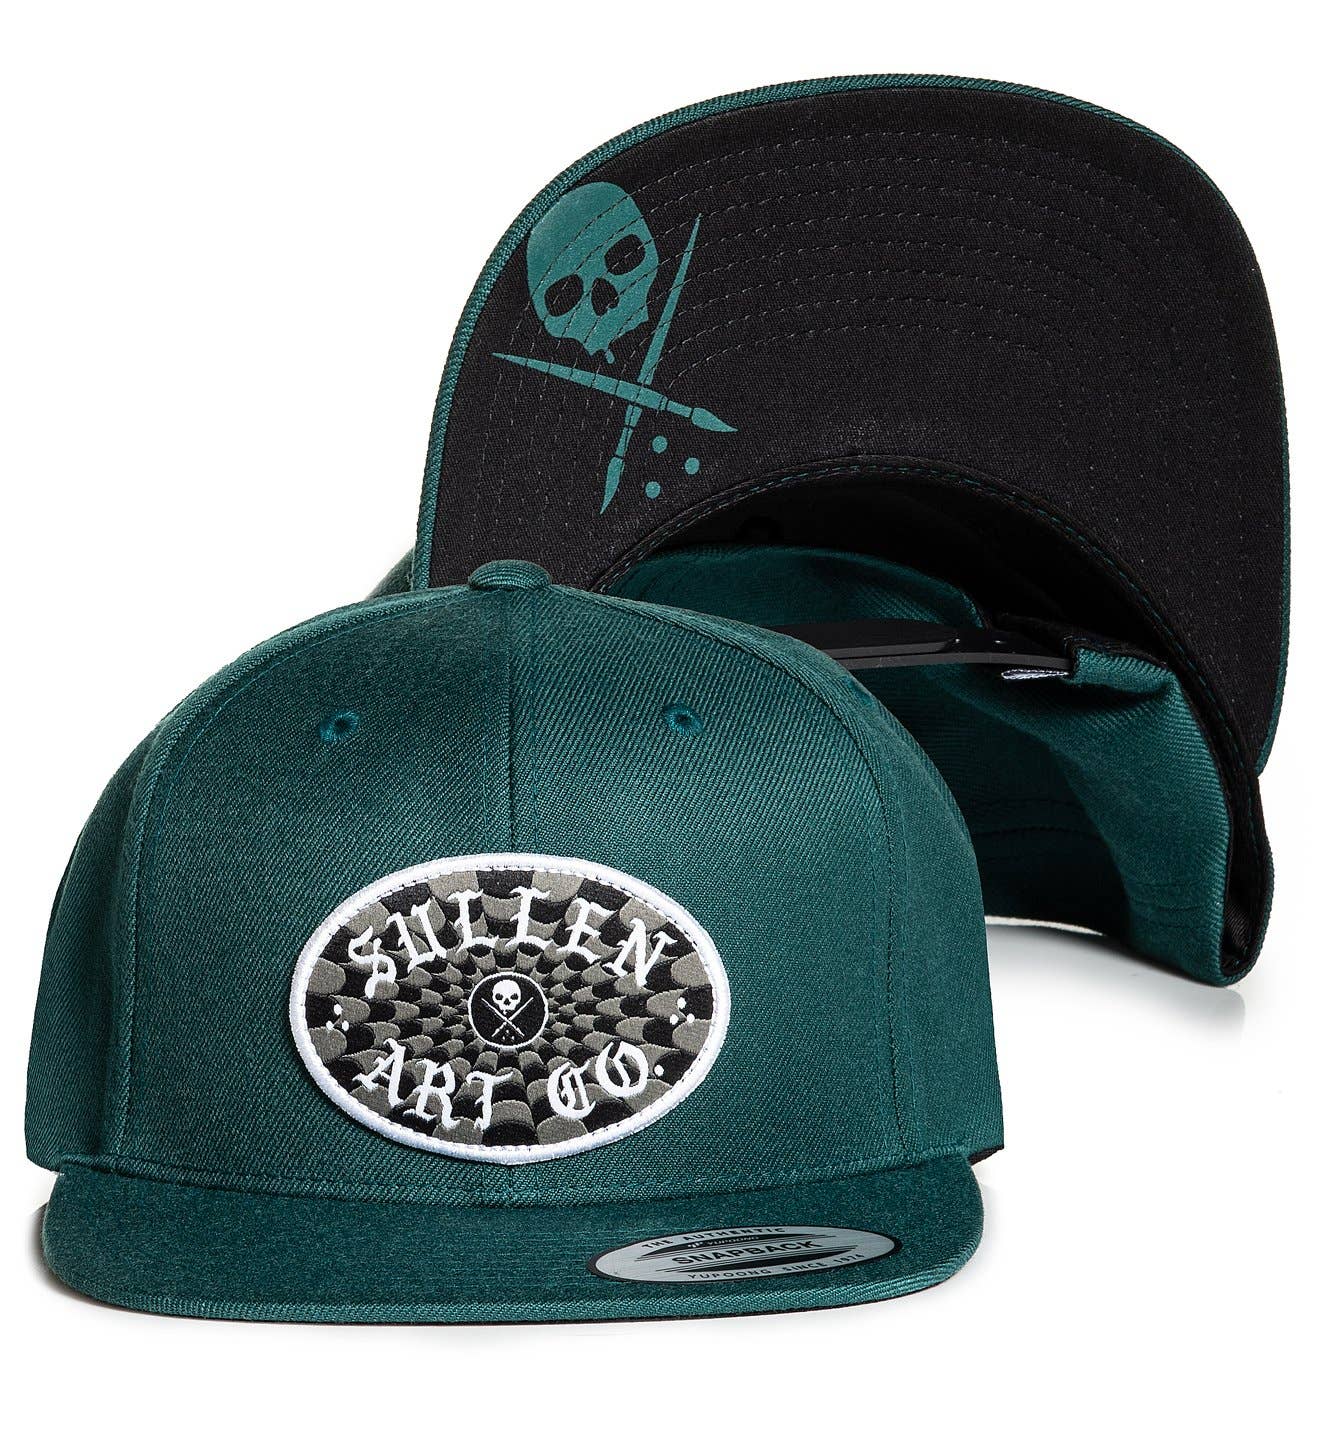 Sullen Men's Charmer Trucker Snapback Hat Black Clothing Apparel Tattoo Skull...